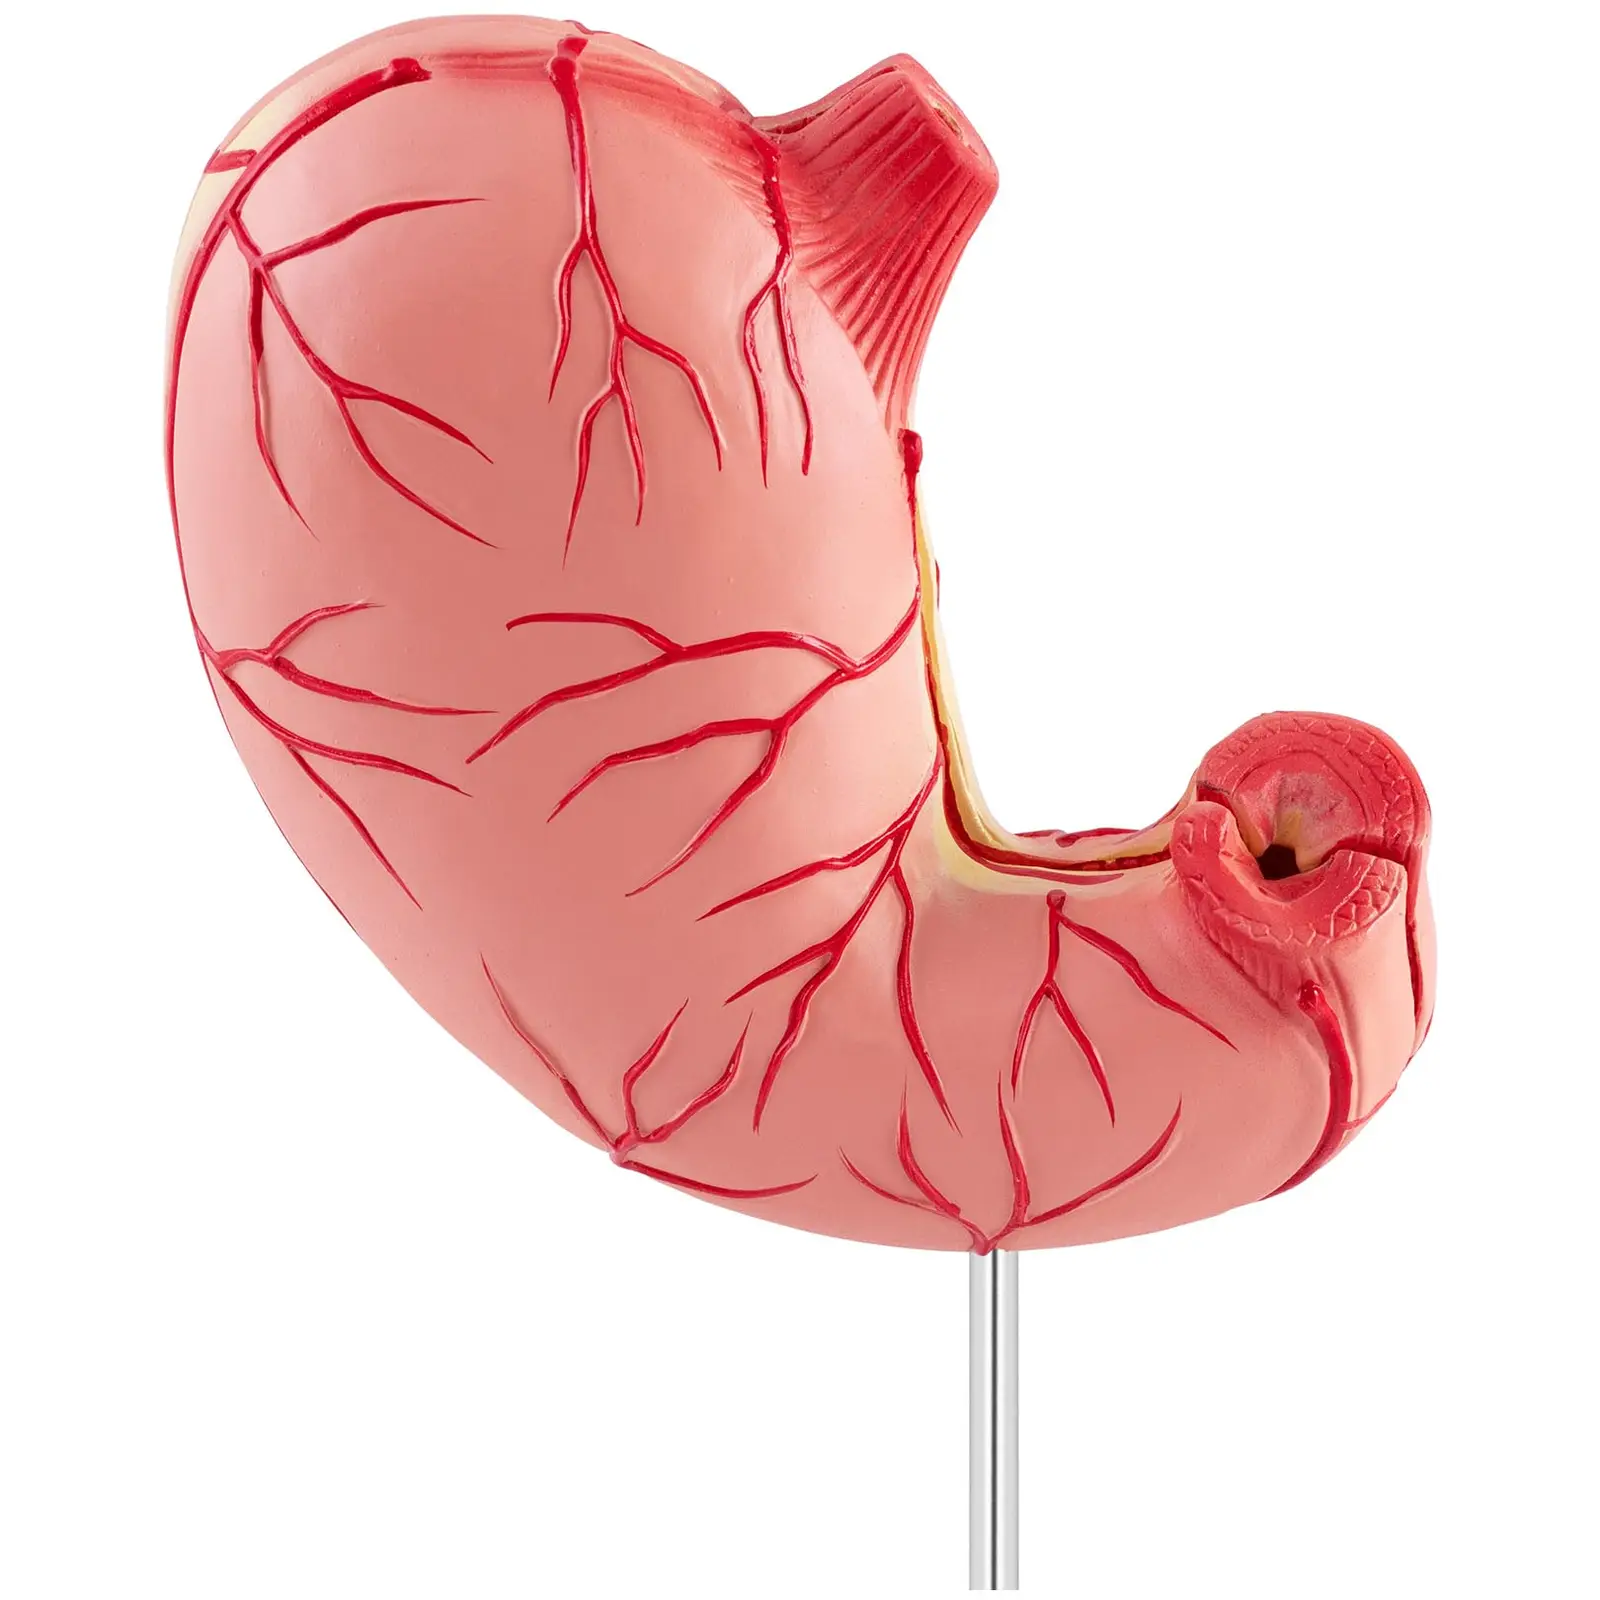 Maquette anatomique de l'estomac - En 2 parties - Grandeur nature